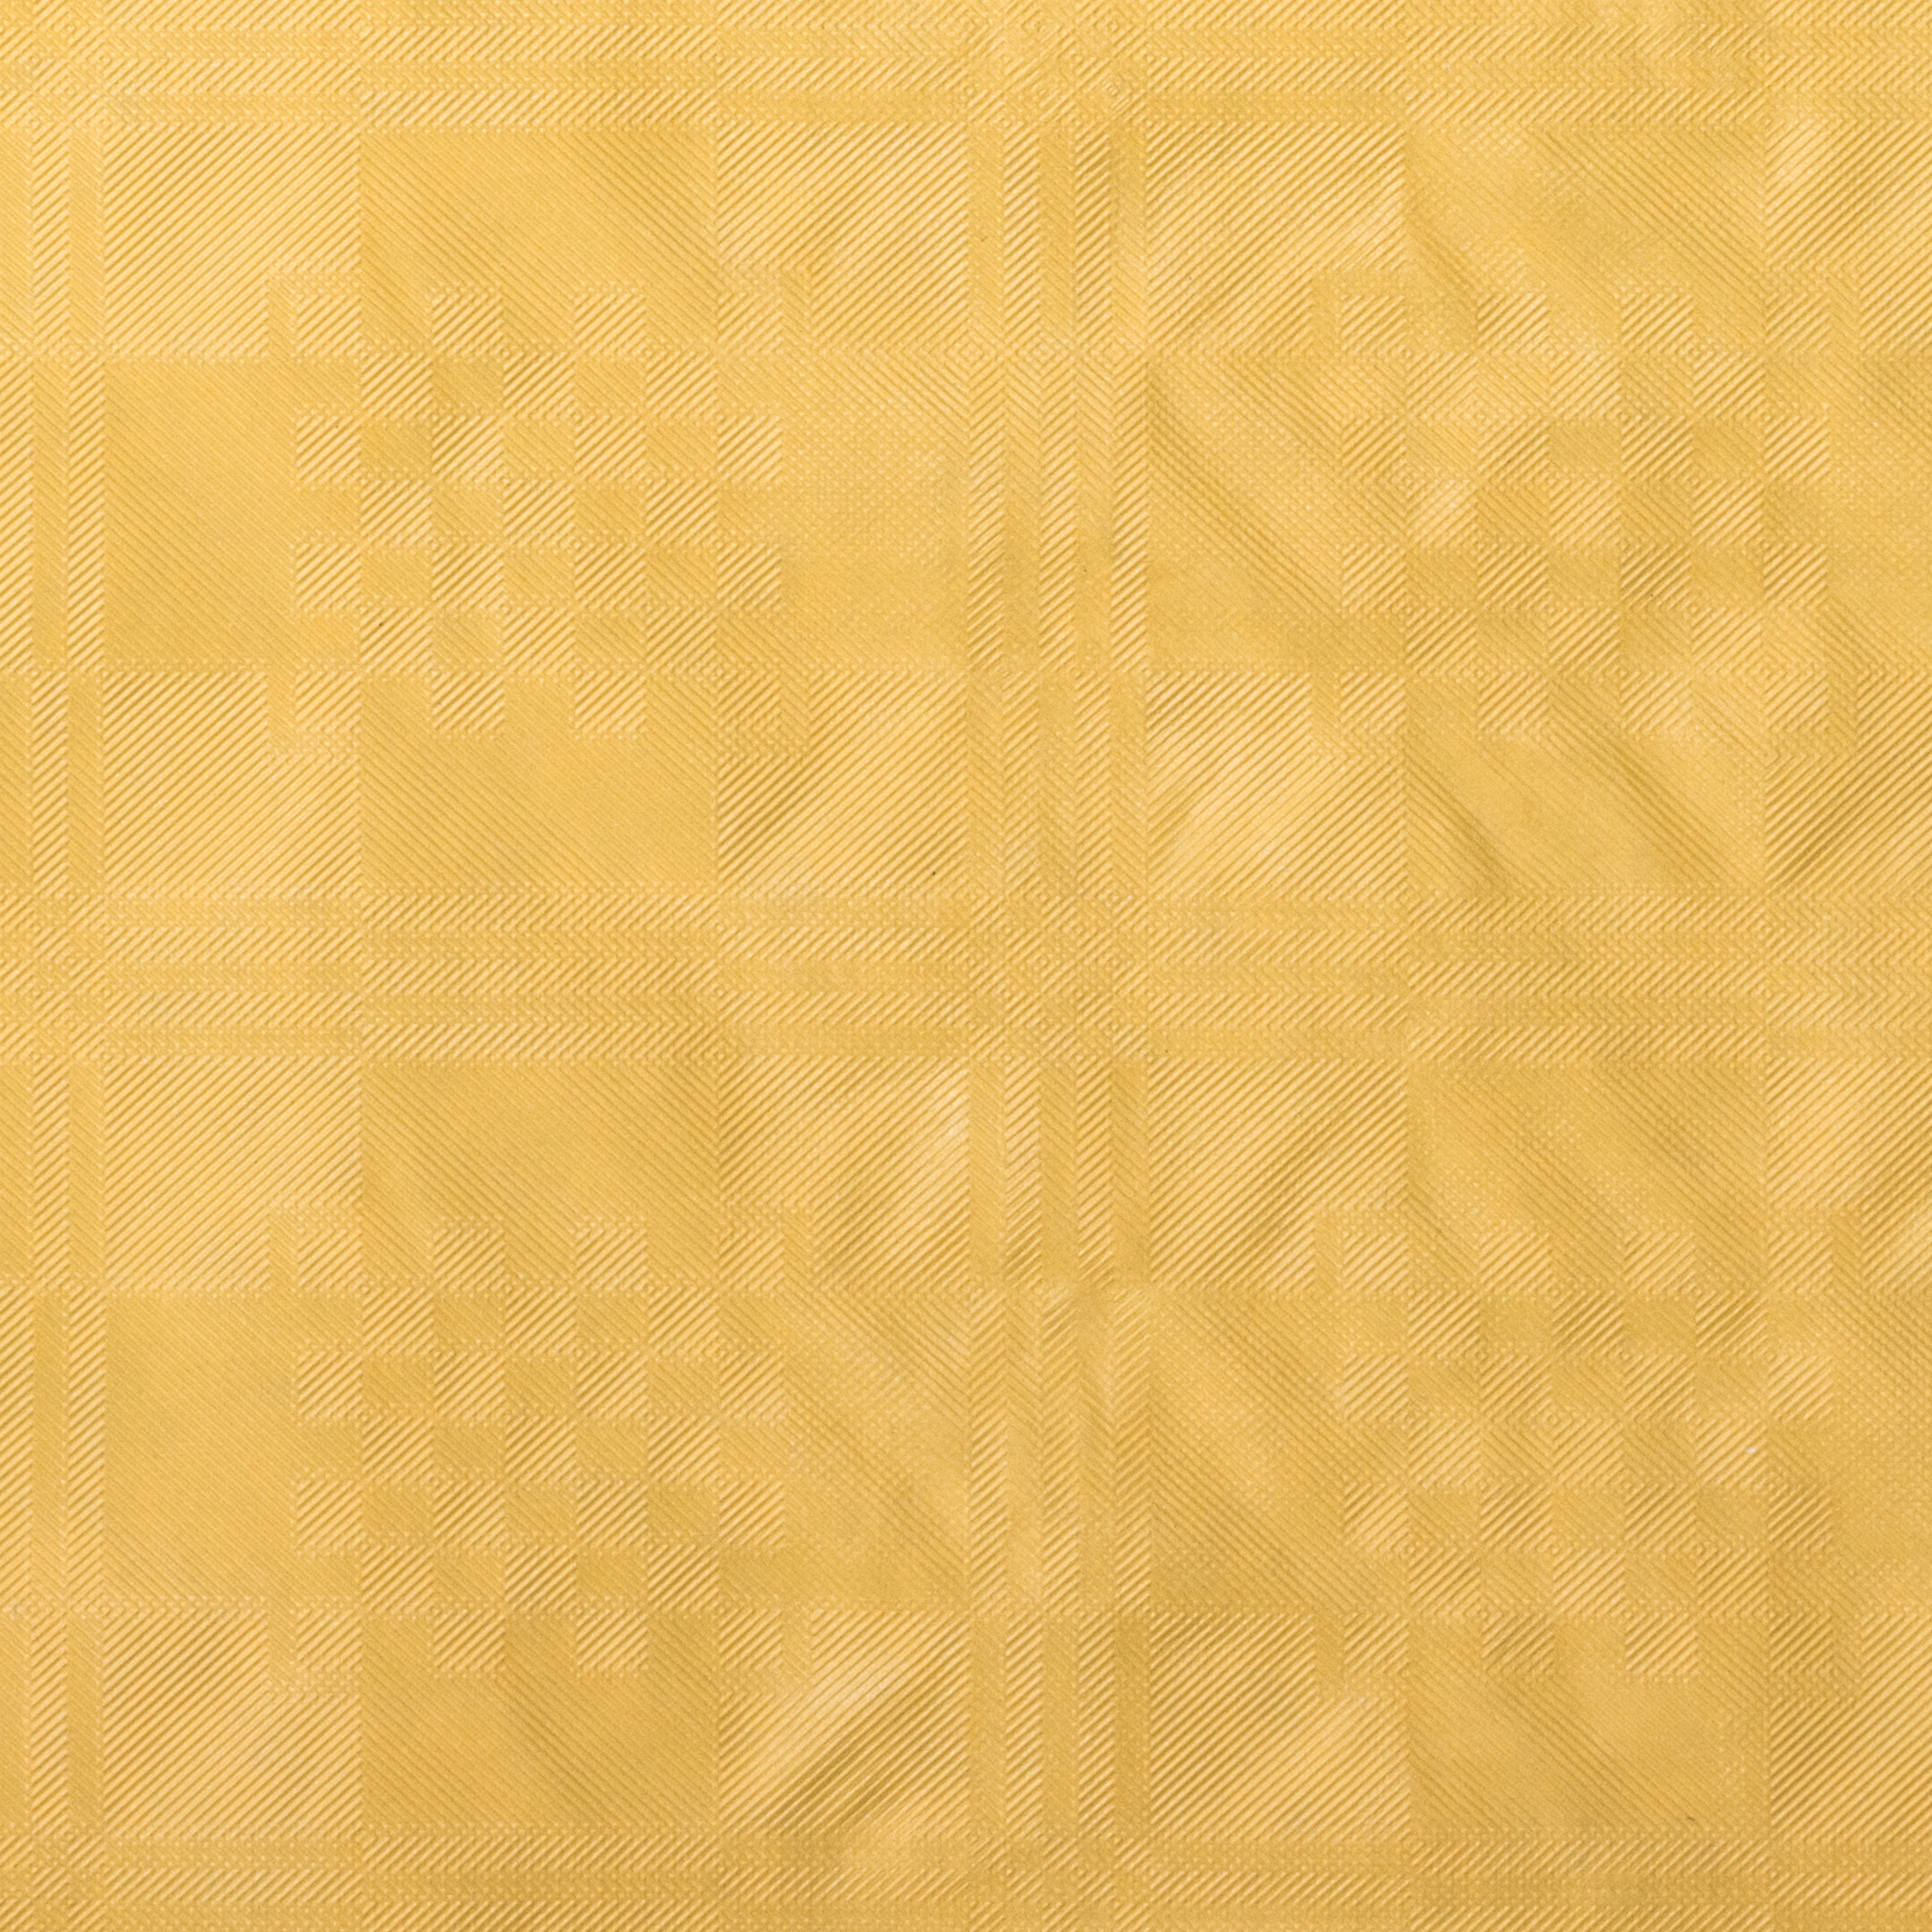 Tischtuchpapier uni gelb, 1 x 50 m